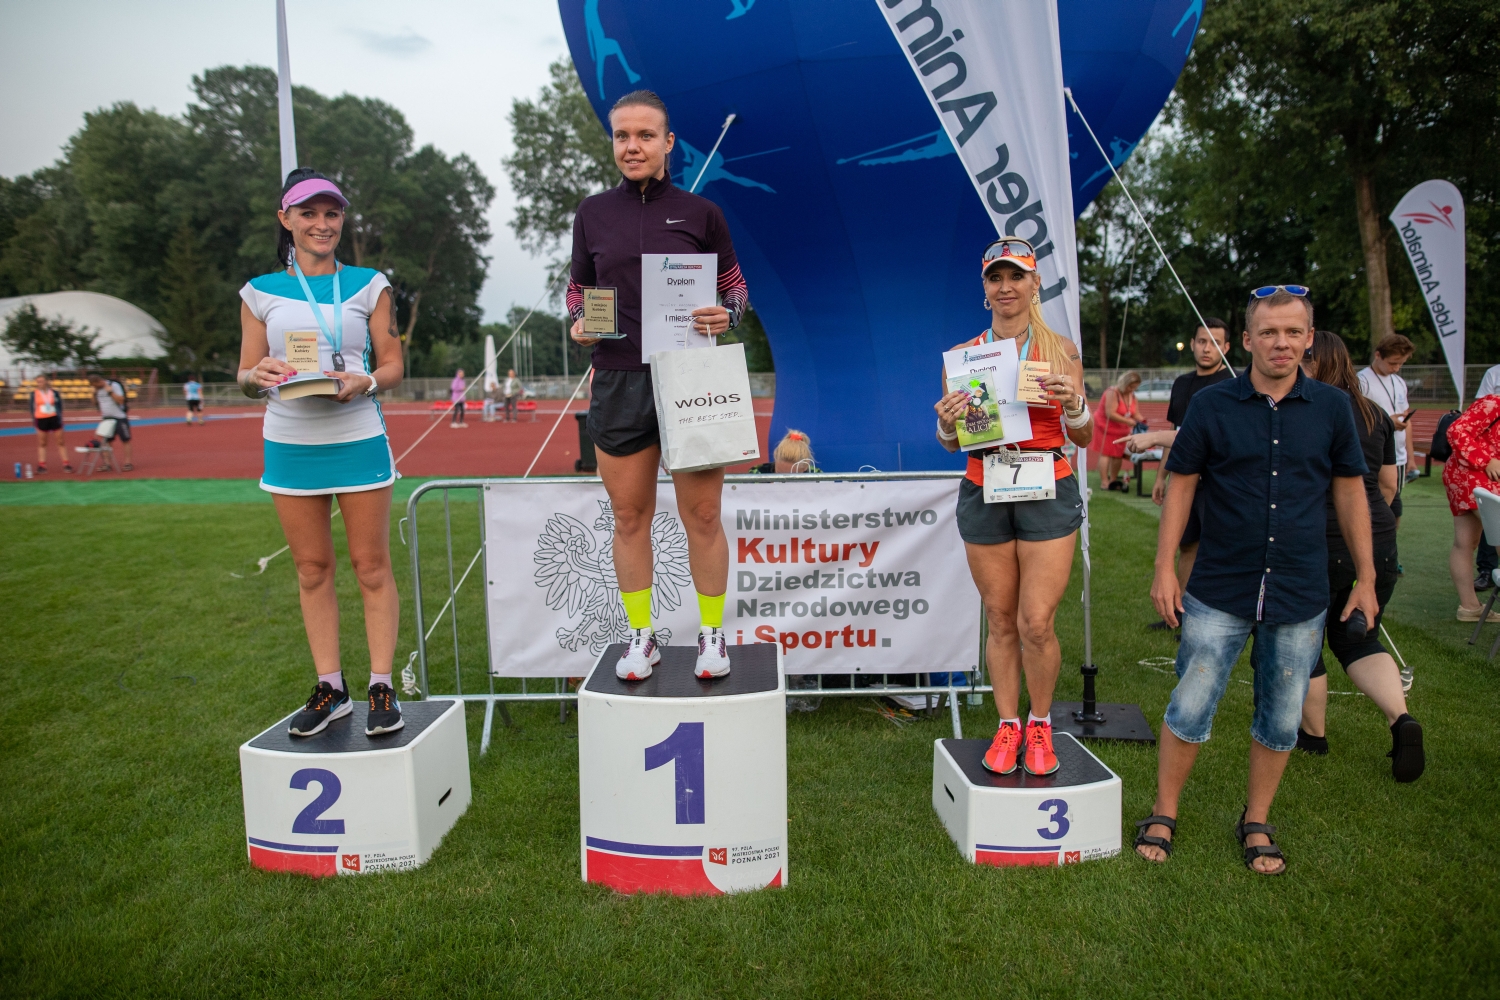 Poznanskie Bieg Otwarcia Igrzysk 2021 Biegaczki na podium